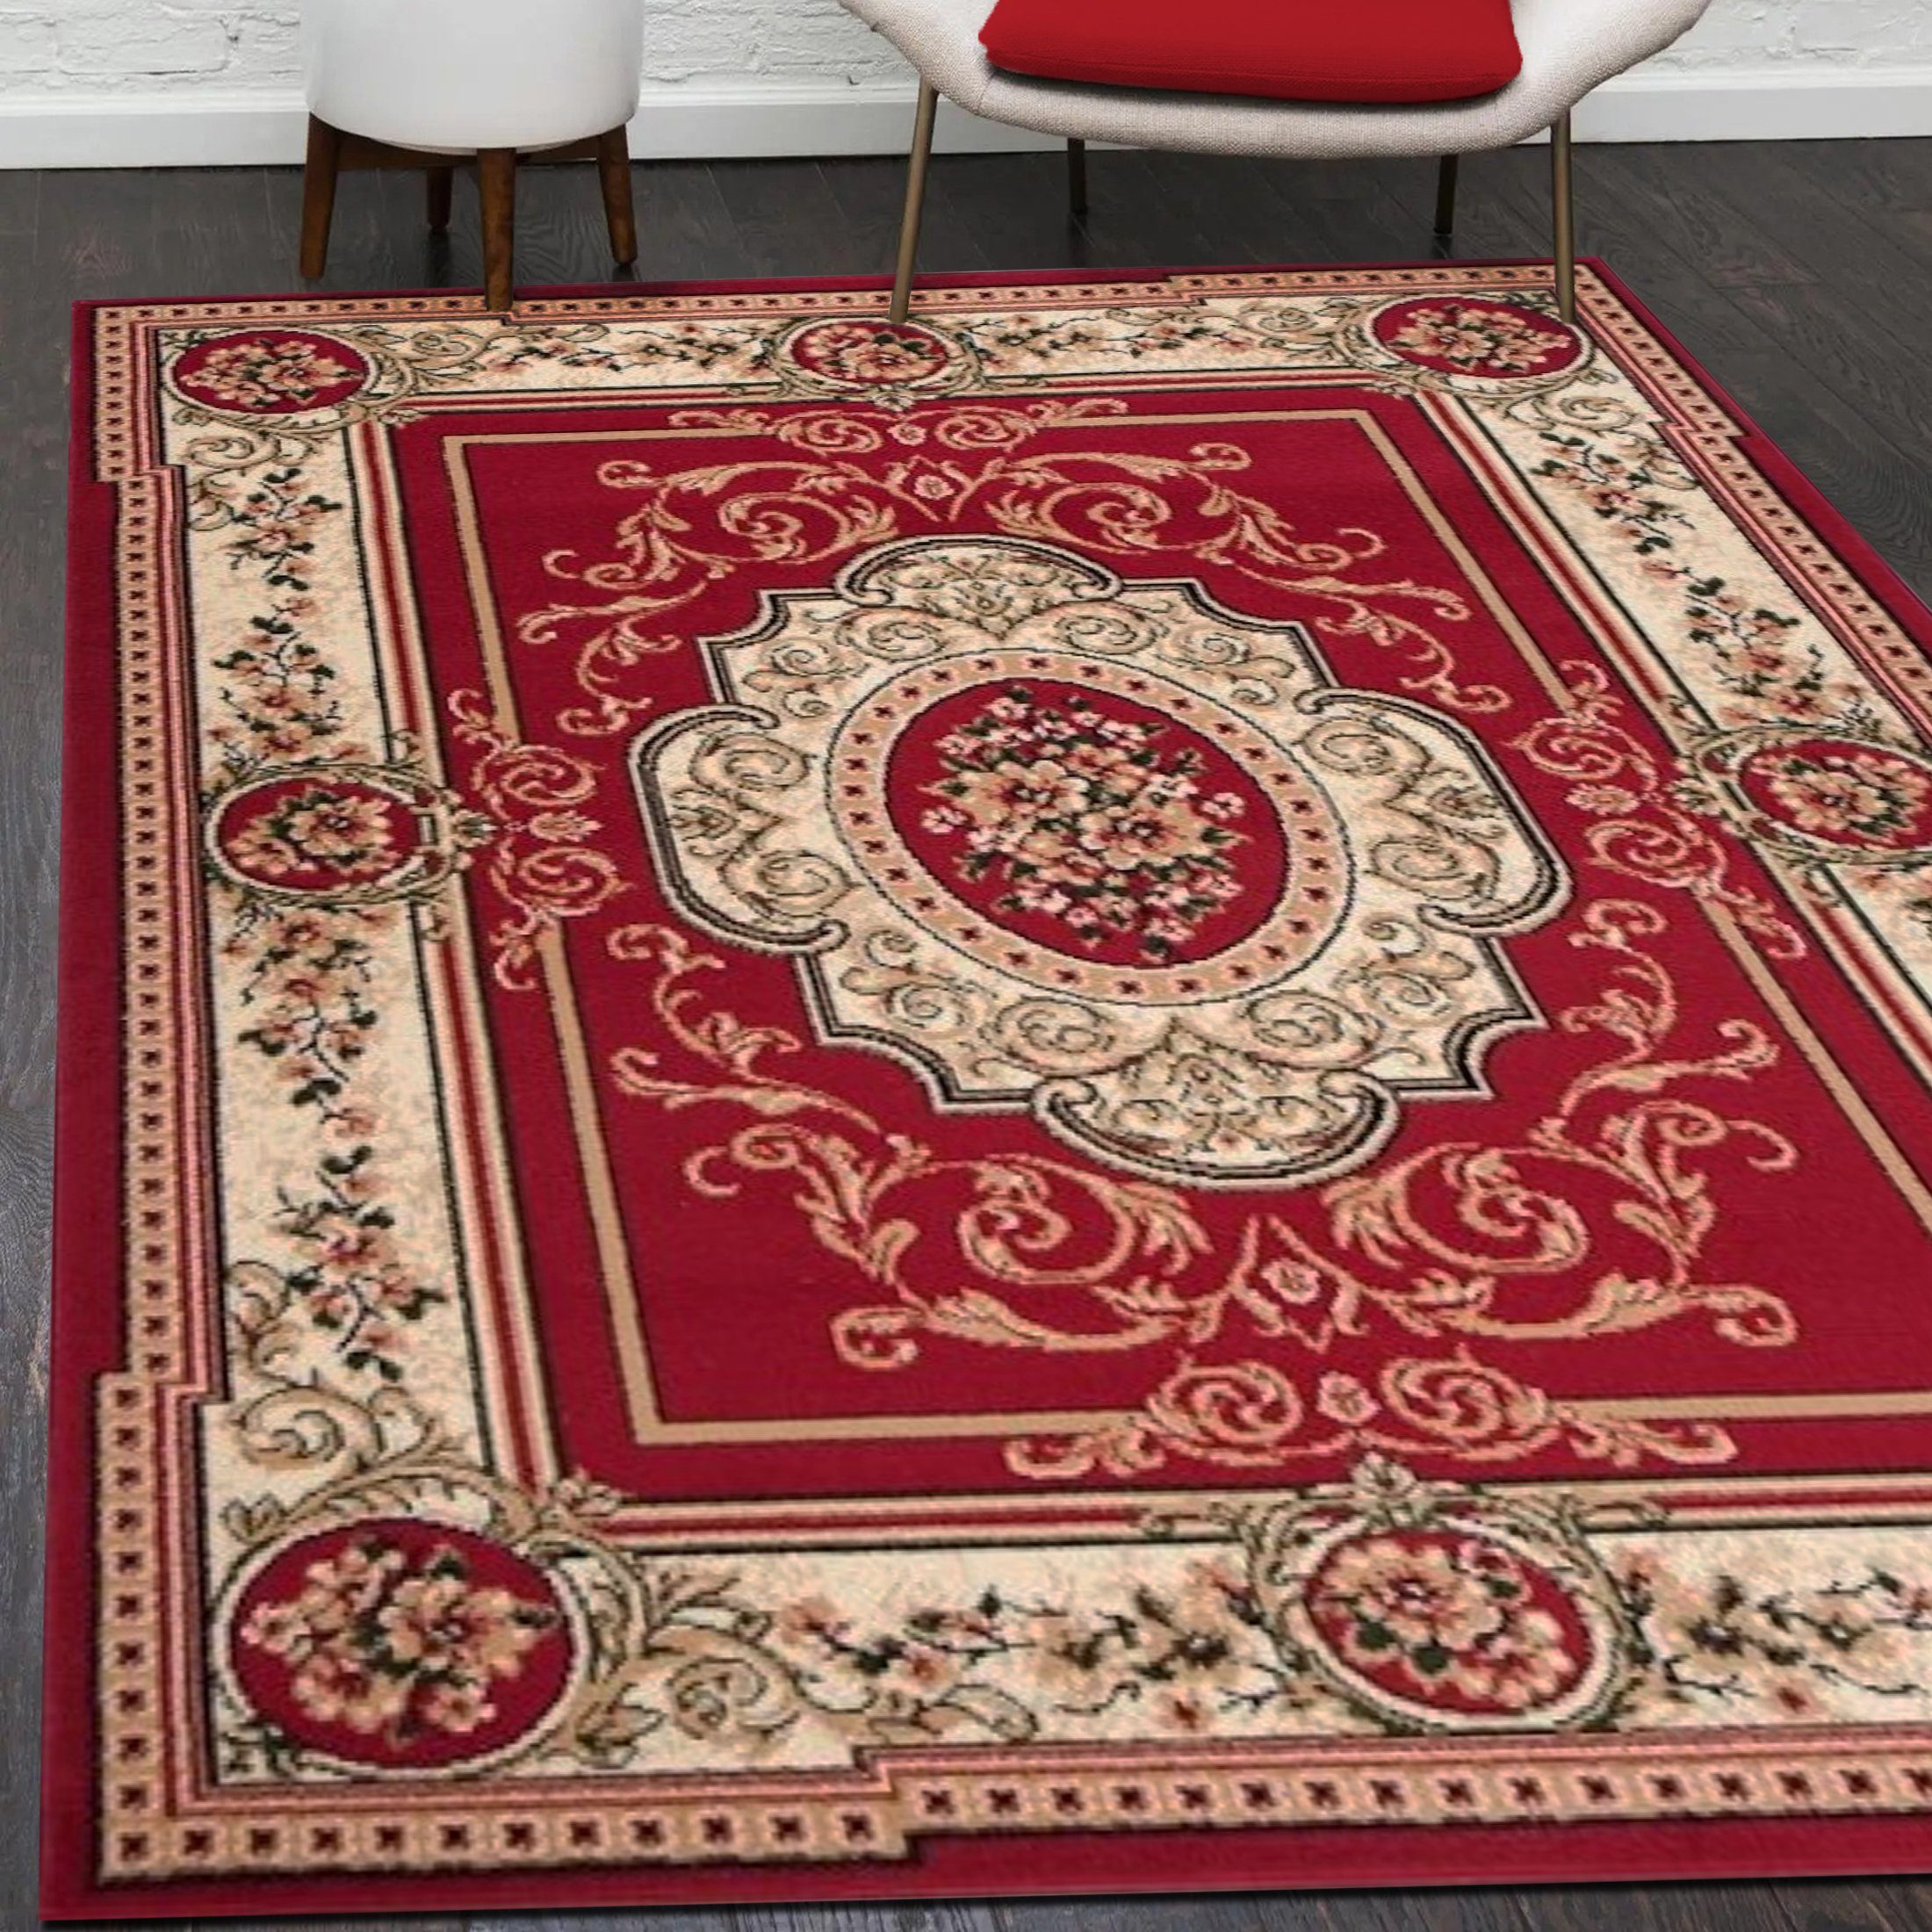 Orientteppich Orientalisch Vintage Teppich Kurzflor Wohnzimmerteppich Rot, Mazovia, 120 x 170 cm, Fußbodenheizung, Allergiker geeignet, Farbecht, Pflegeleicht Rot / F744A-RED | Alle Teppiche